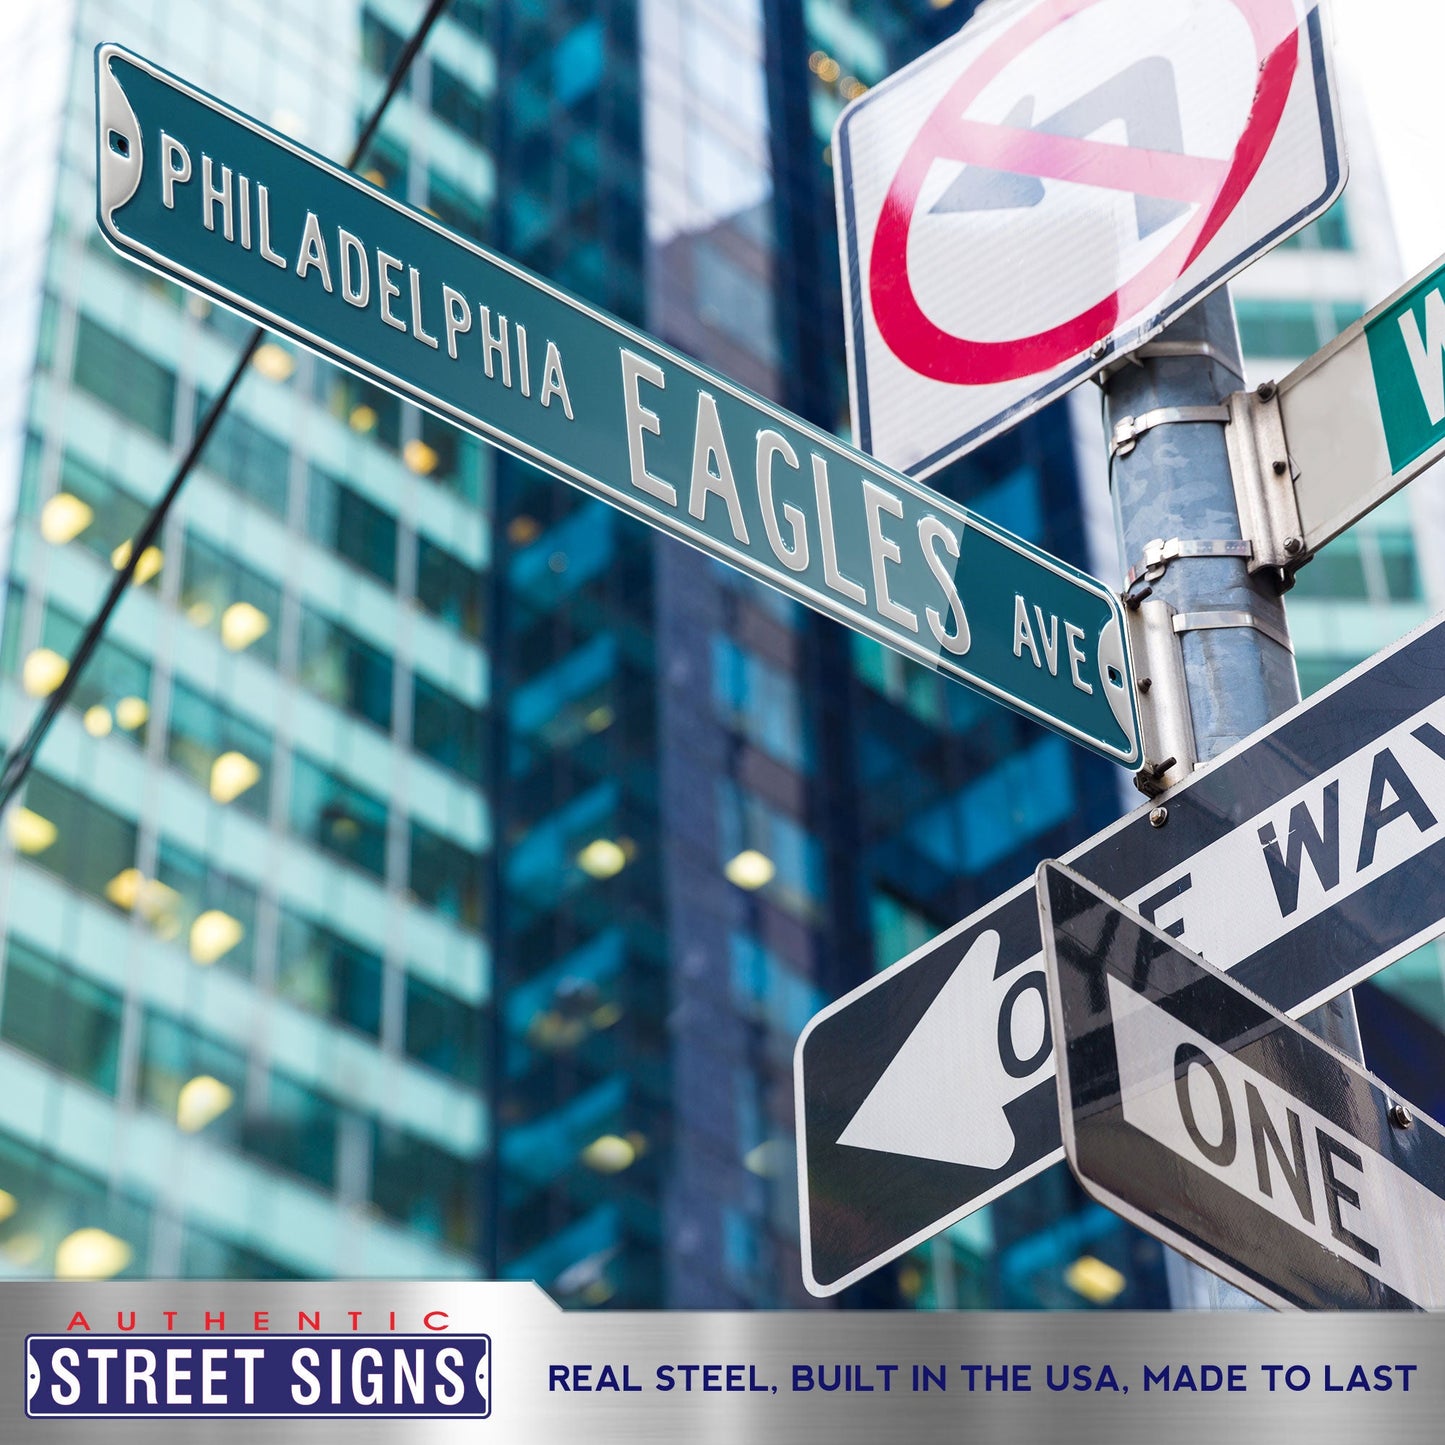 Philadelphia Eagles - PHILADELPHIA EAGLES AVE - Embossed Steel Street –  Fathead